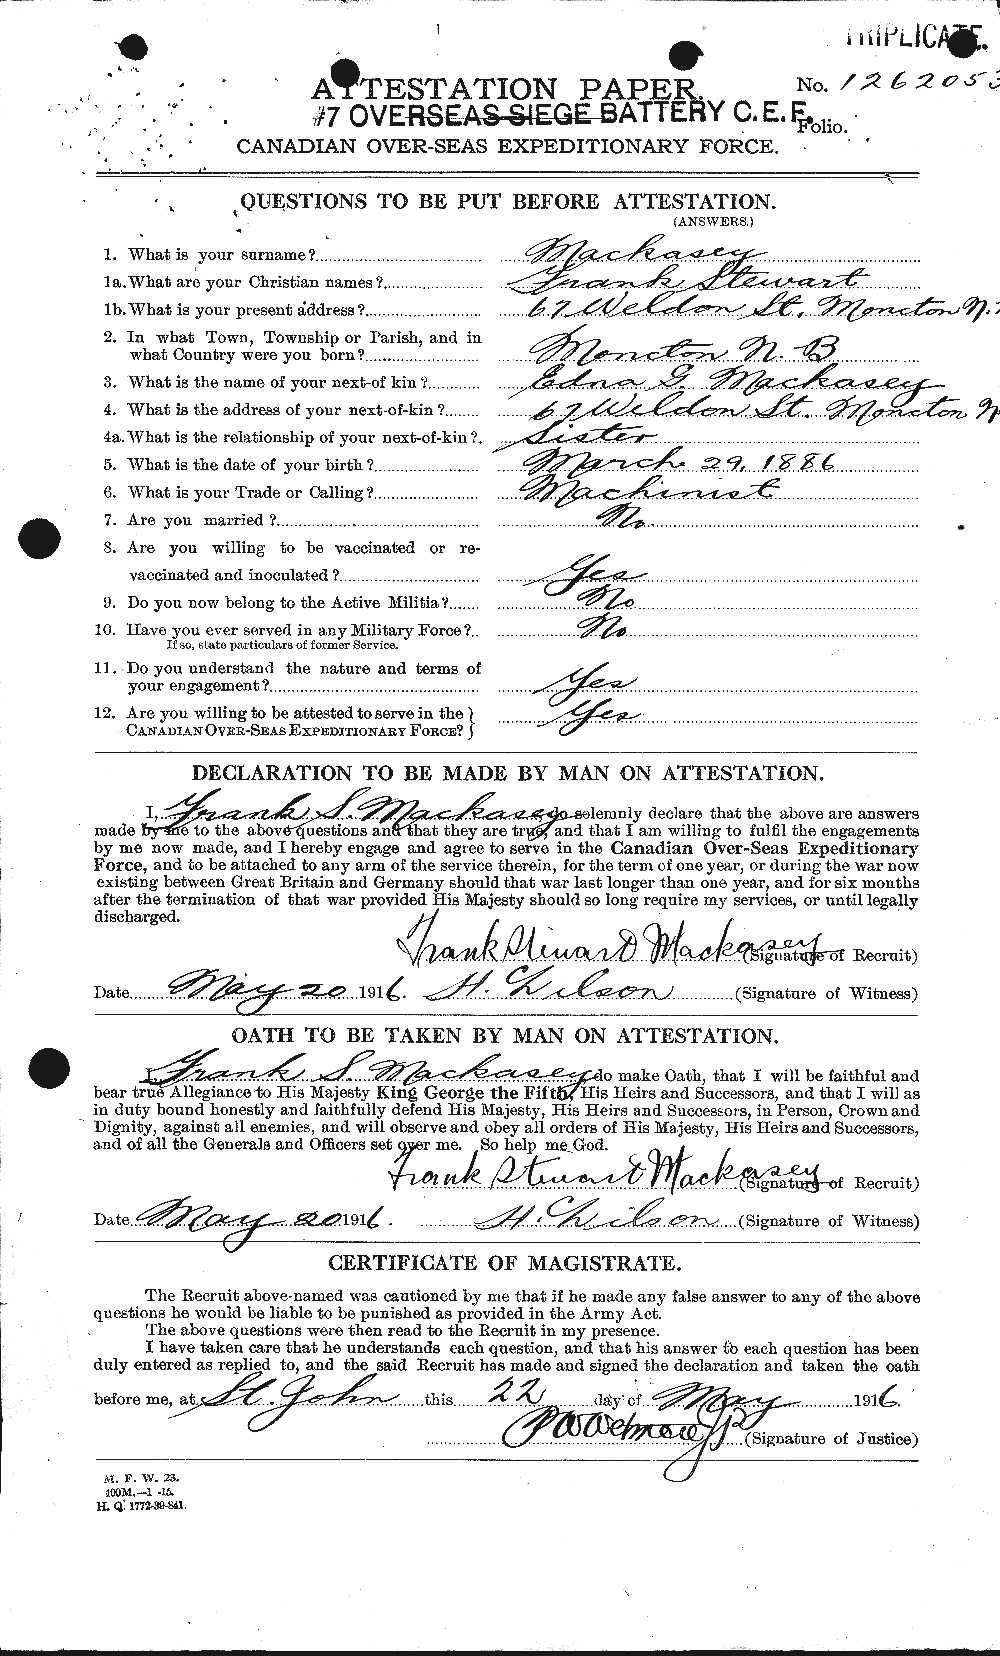 Dossiers du Personnel de la Première Guerre mondiale - CEC 530870a